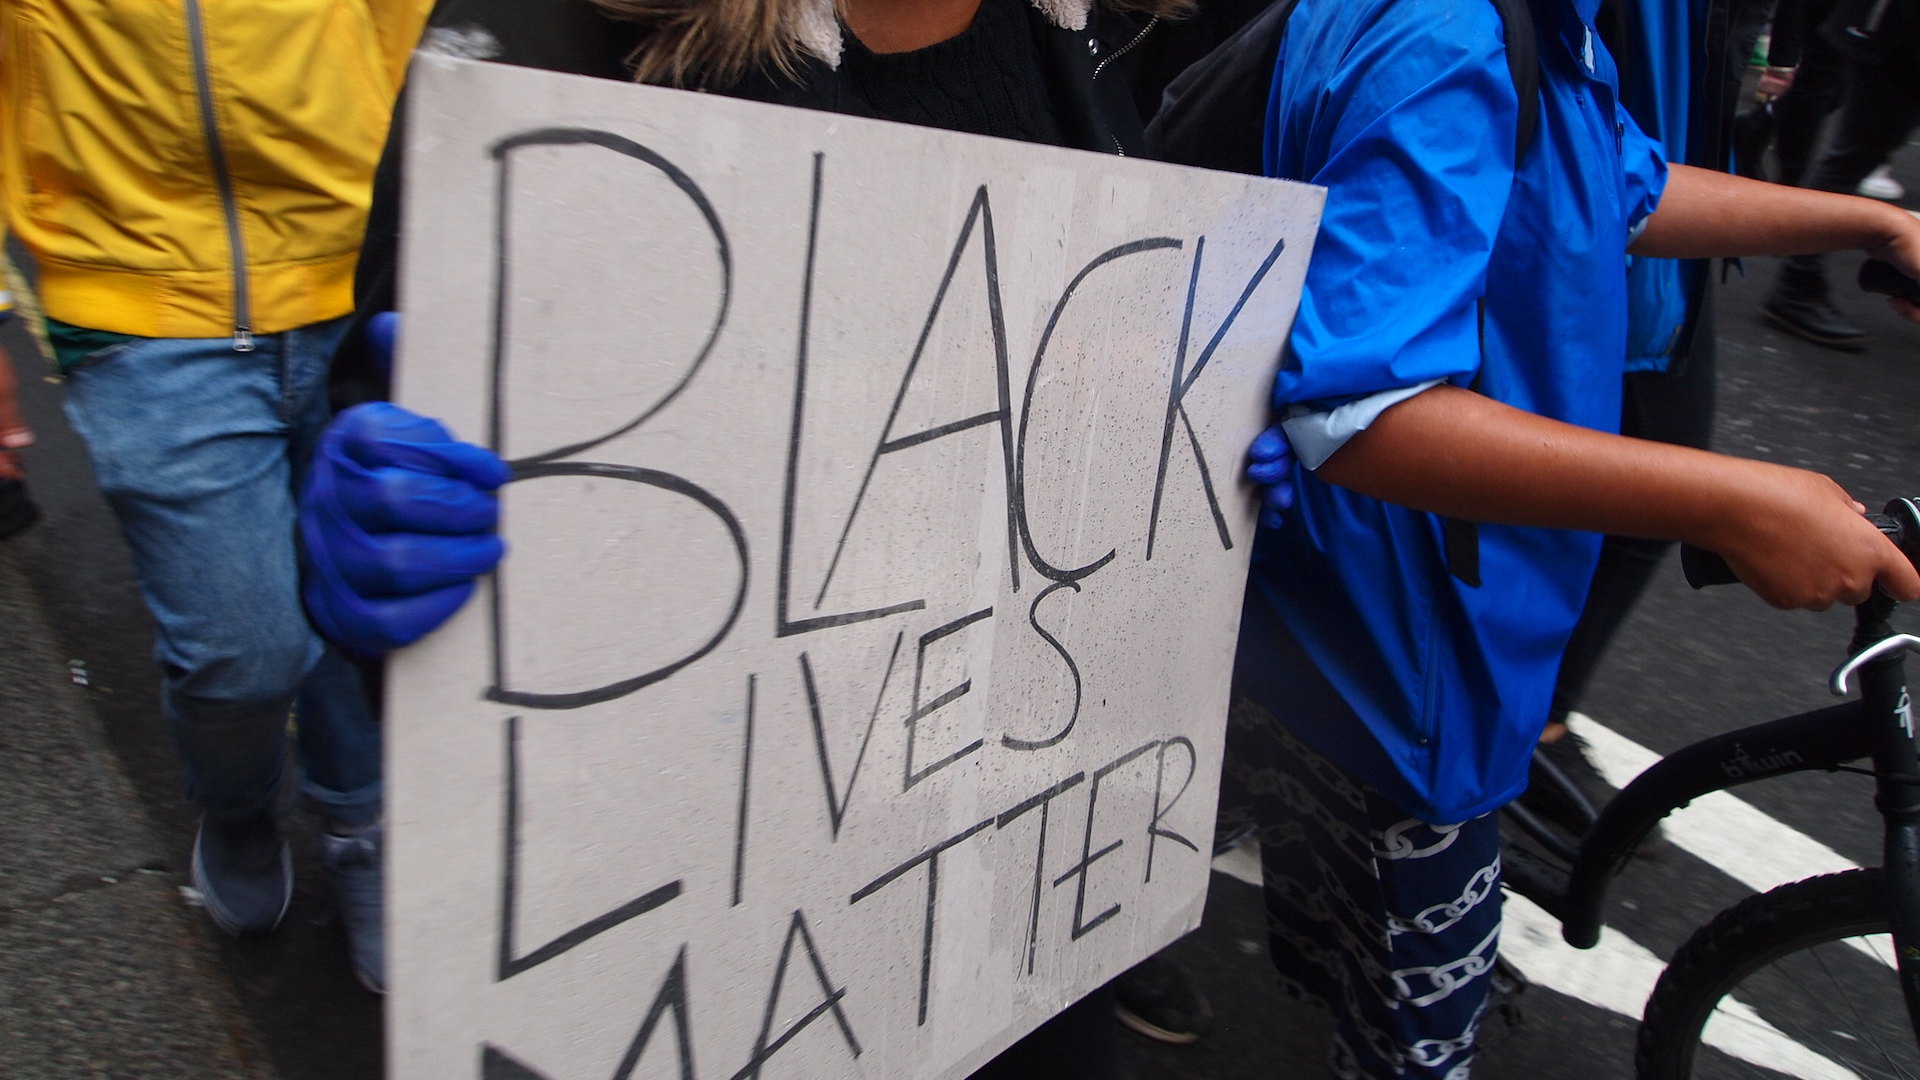 A Black Lives Matter demonstration in London, July 2020.